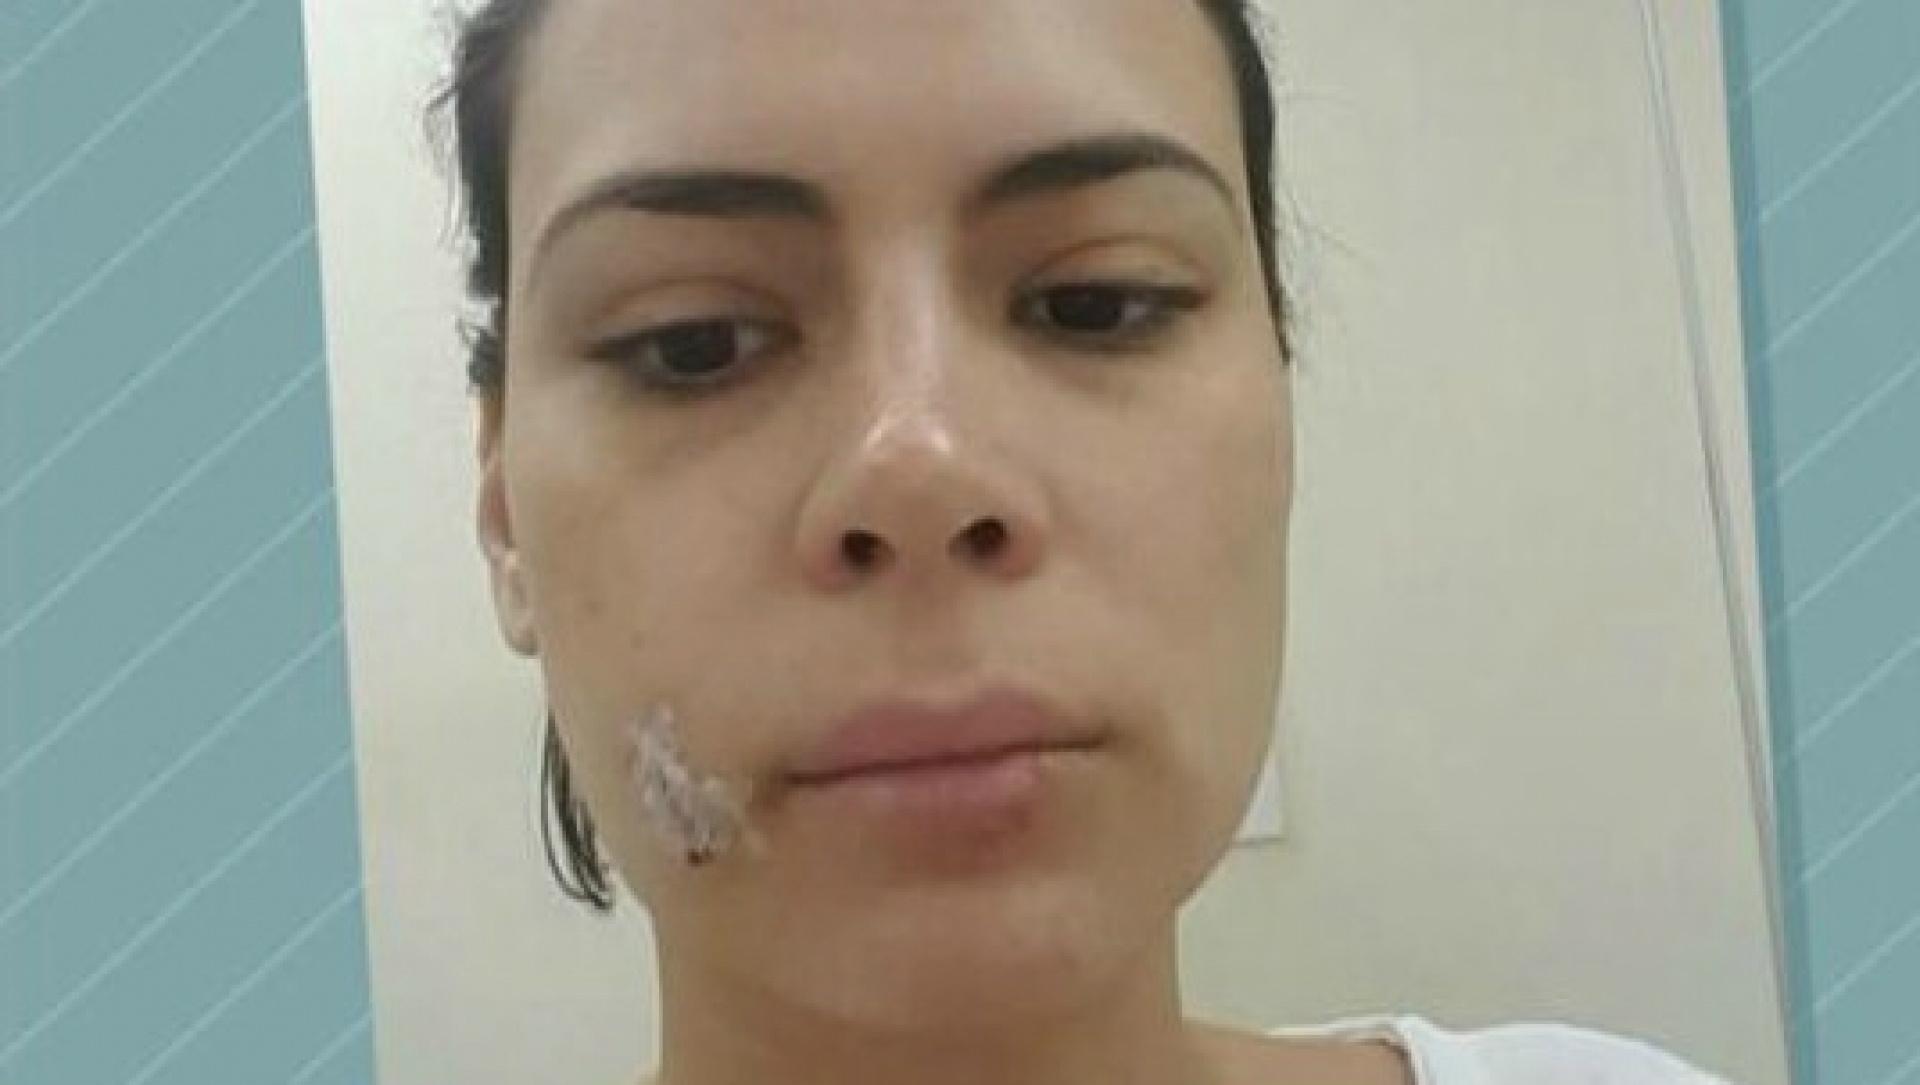 Michelle mostra lesão ocasionada pela mordida repentina. Foto: Reprodução/TV Globo